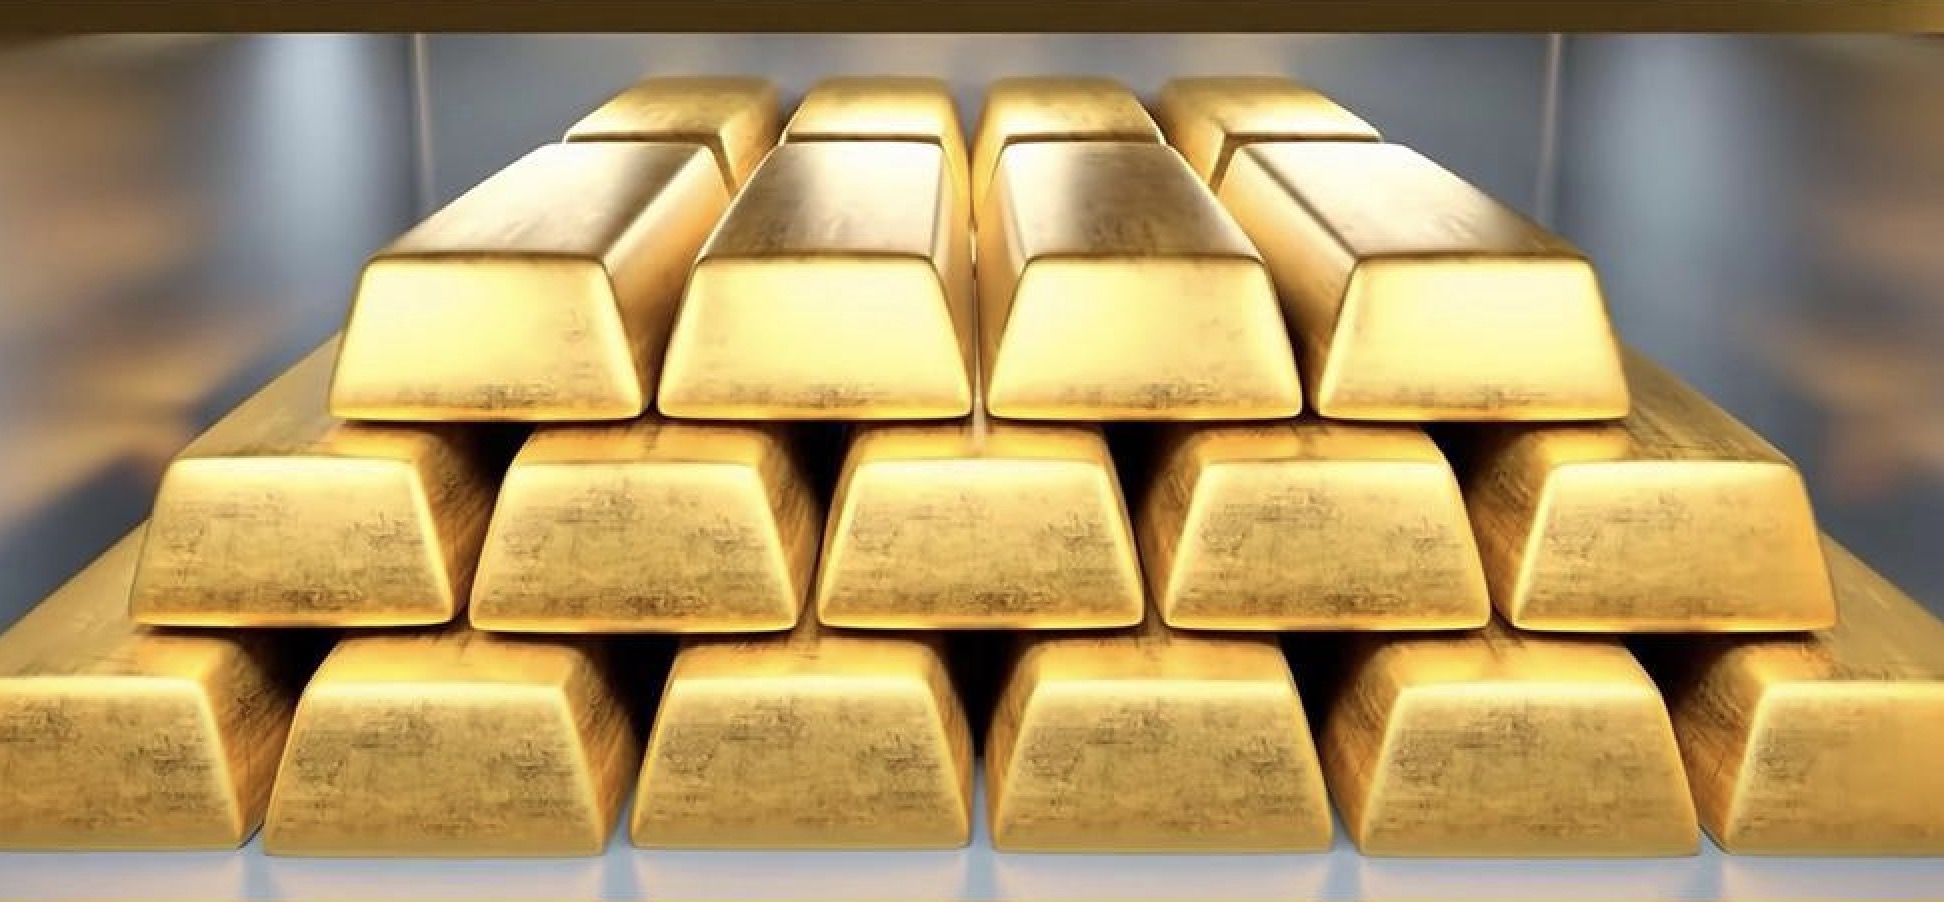 Analisis Emas: Harga emas spot tetap stabil menjelang data penting